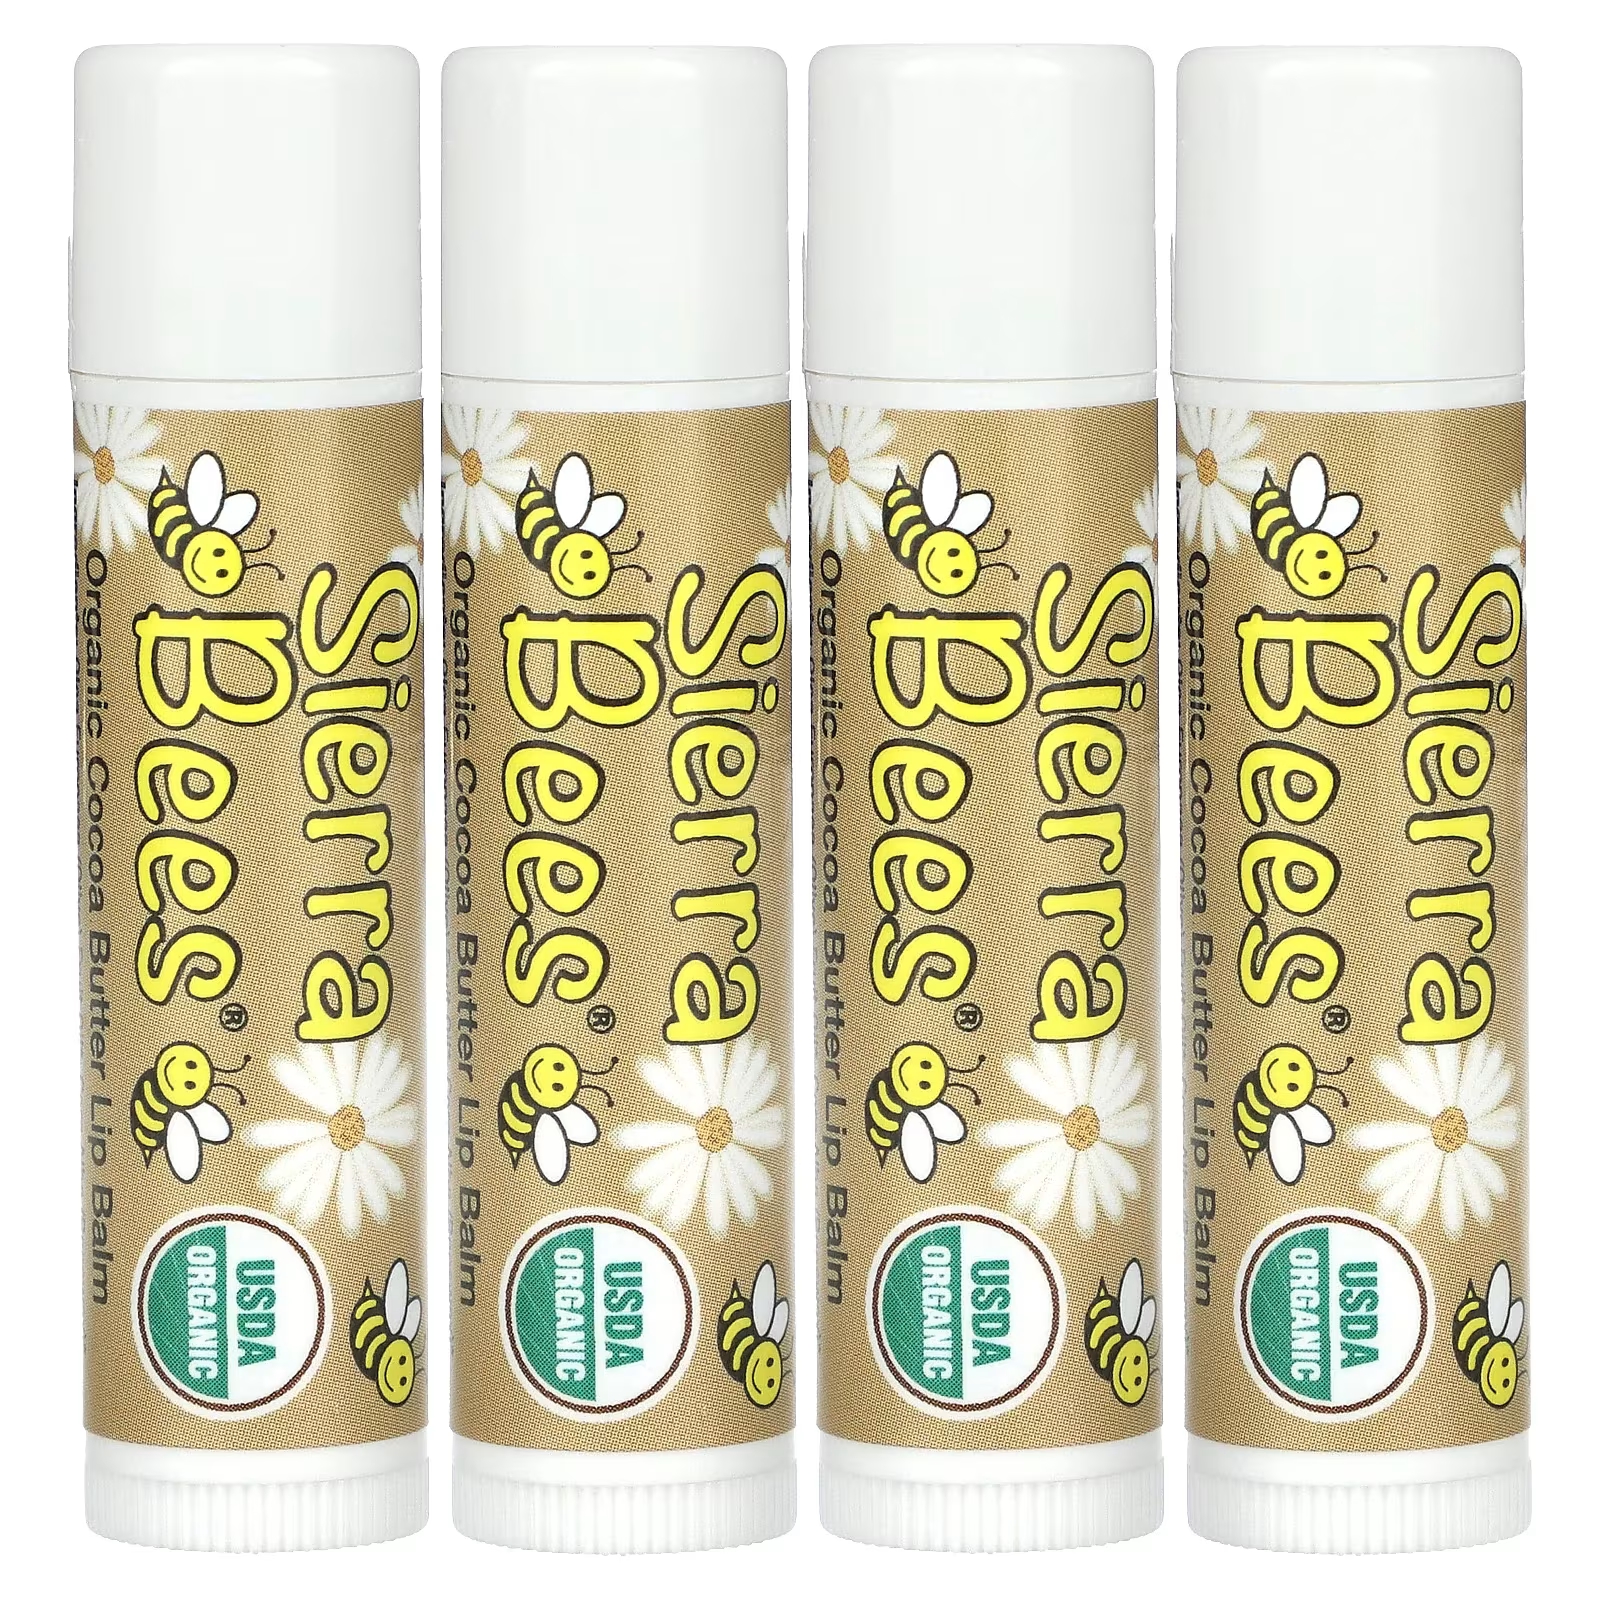 Органические бальзамы для губ Sierra Bees с маслом какао, 4 упаковки по 4,25 г органические бальзамы для губ sierra bees с маслом какао 4 упаковки по 4 25 г